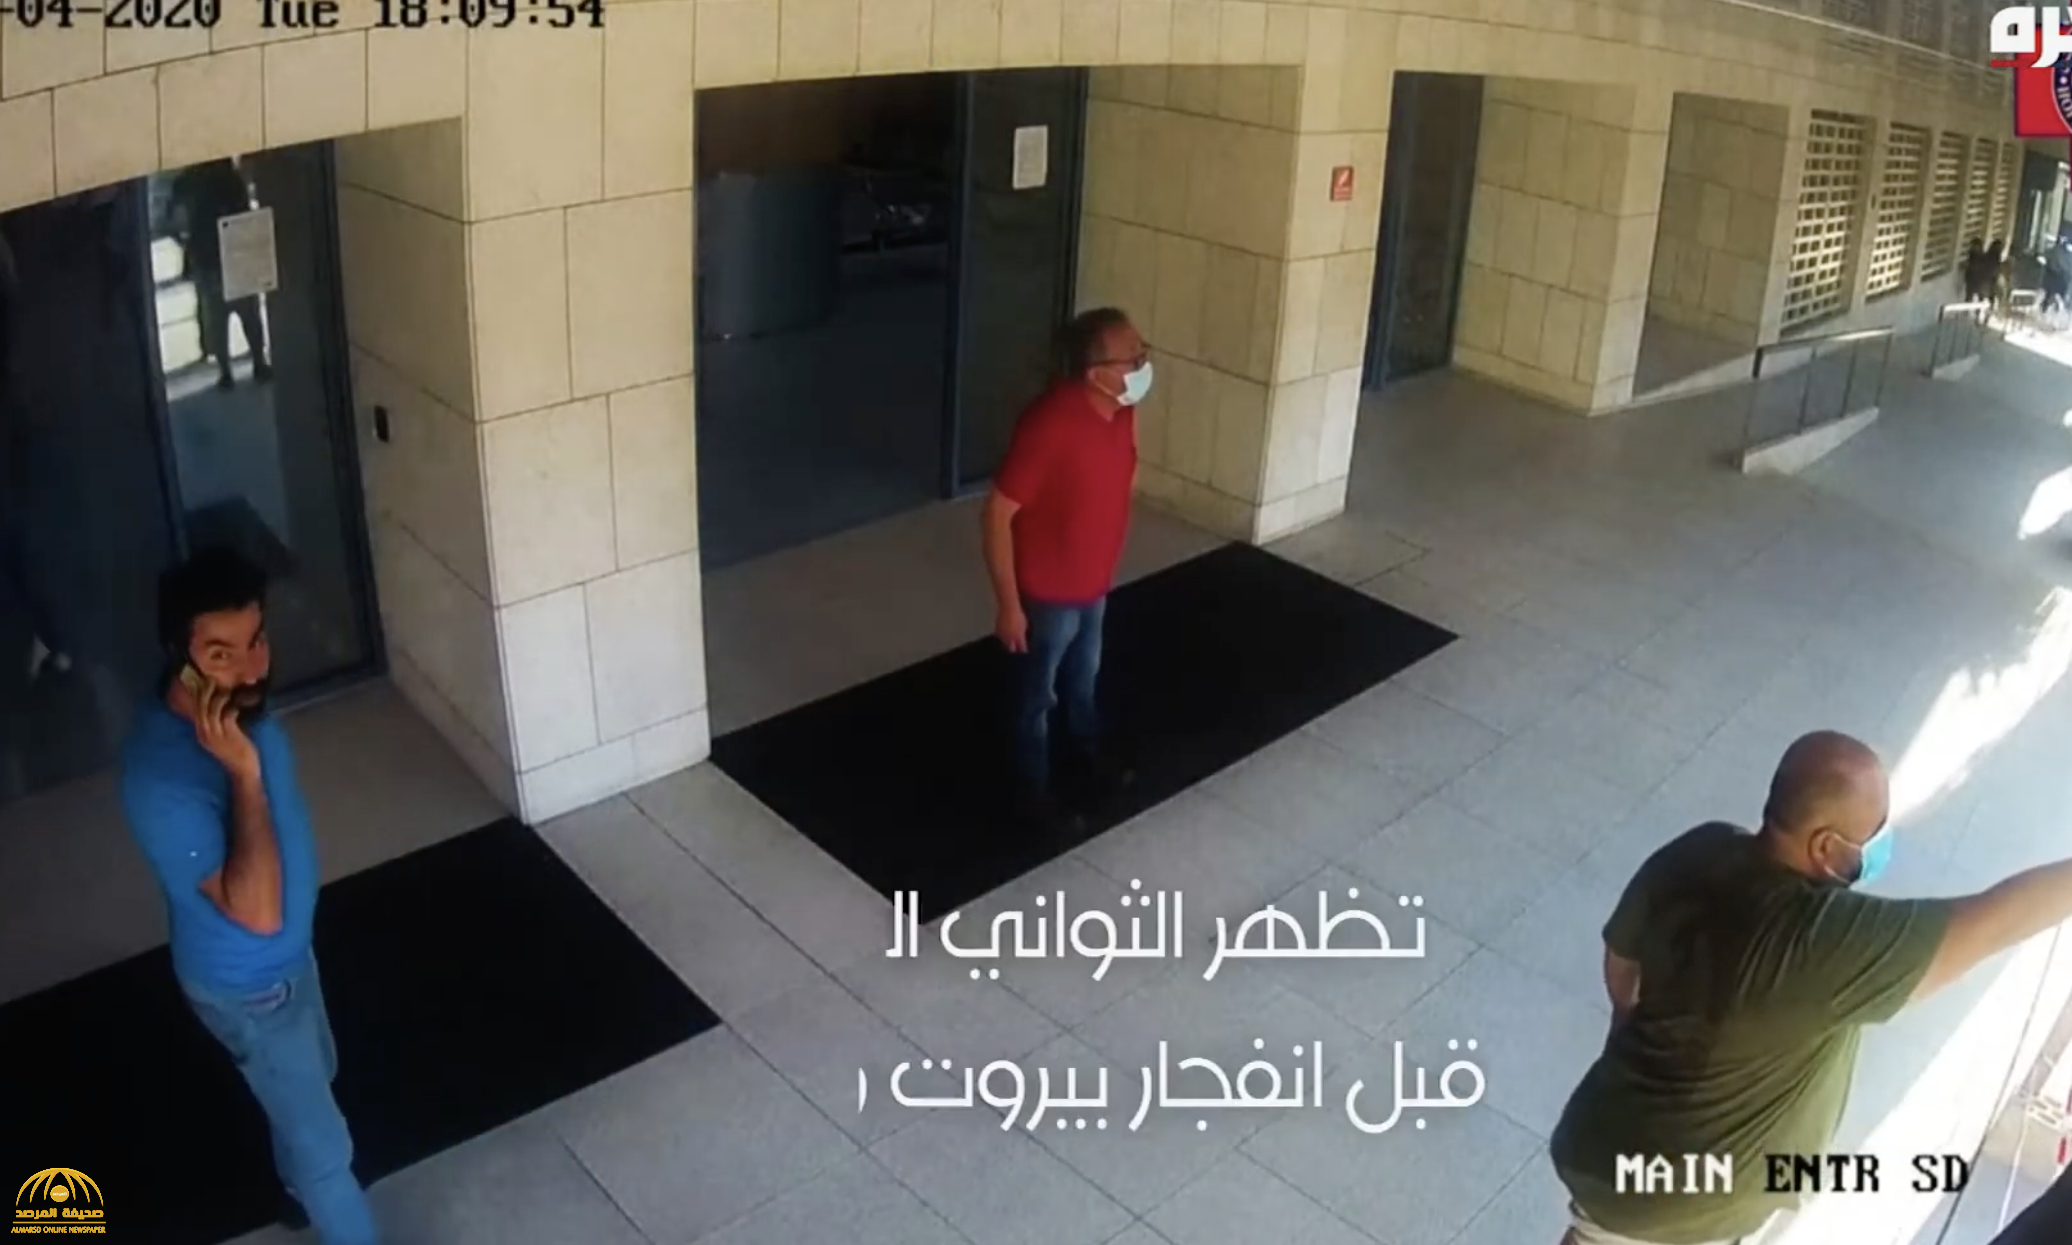 شاهد ..  فيديو جديد من أمام مستشفى في لبنان وقت انفجار مرفأ بيروت الضخم!